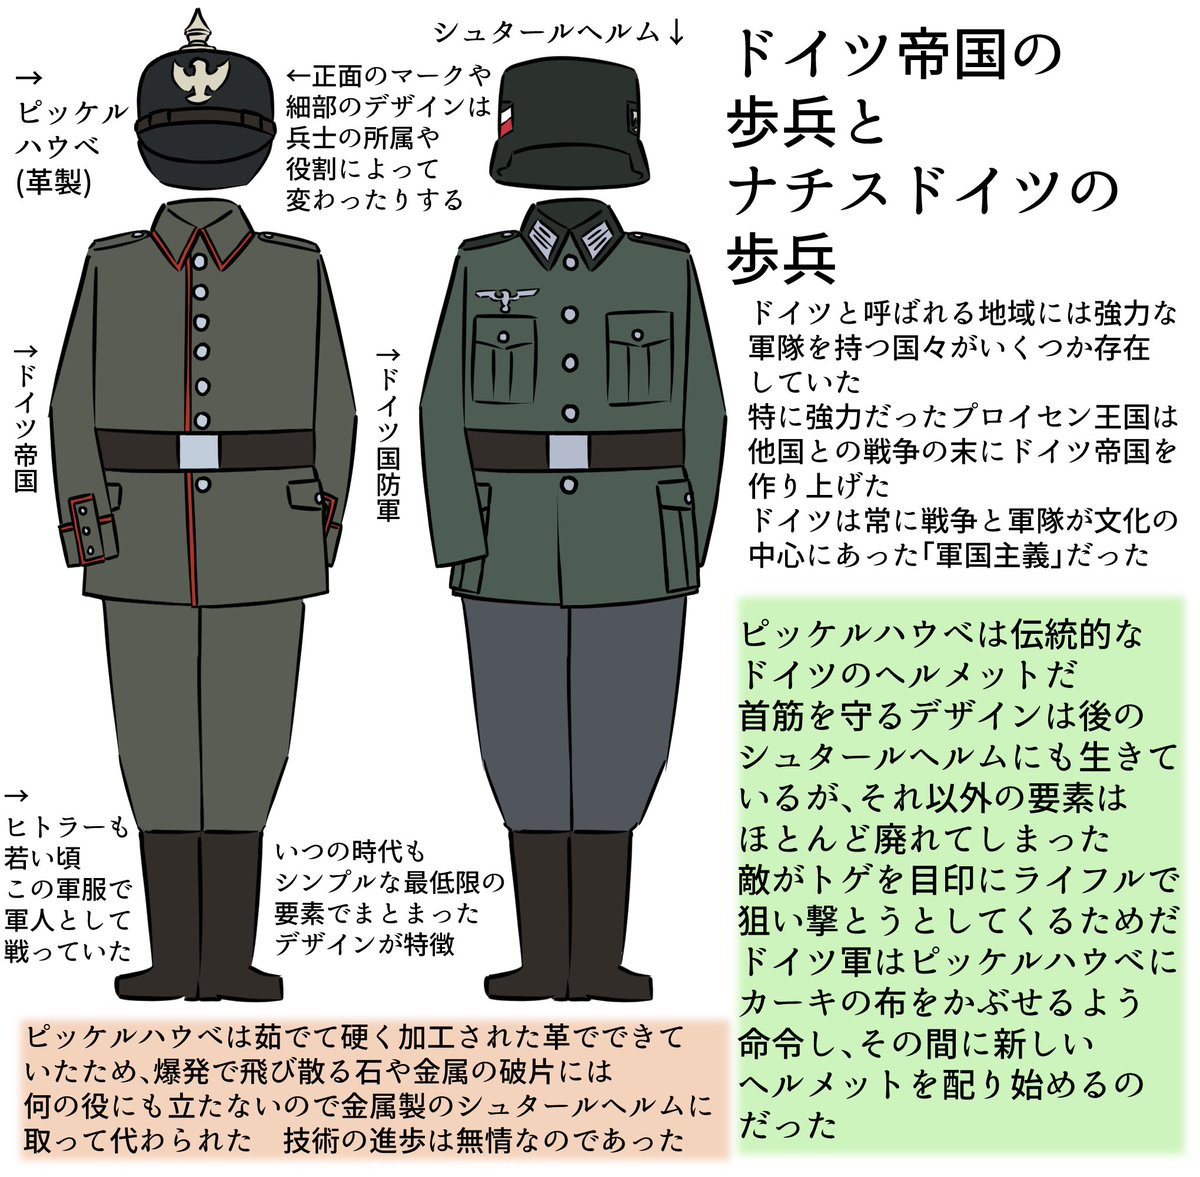 カイネ ジェイソン グリーンの衣装のモデルになったドイツ帝国の軍服 オマケでナチス時代の軍服と比べてみましょうか プロデューサーズ